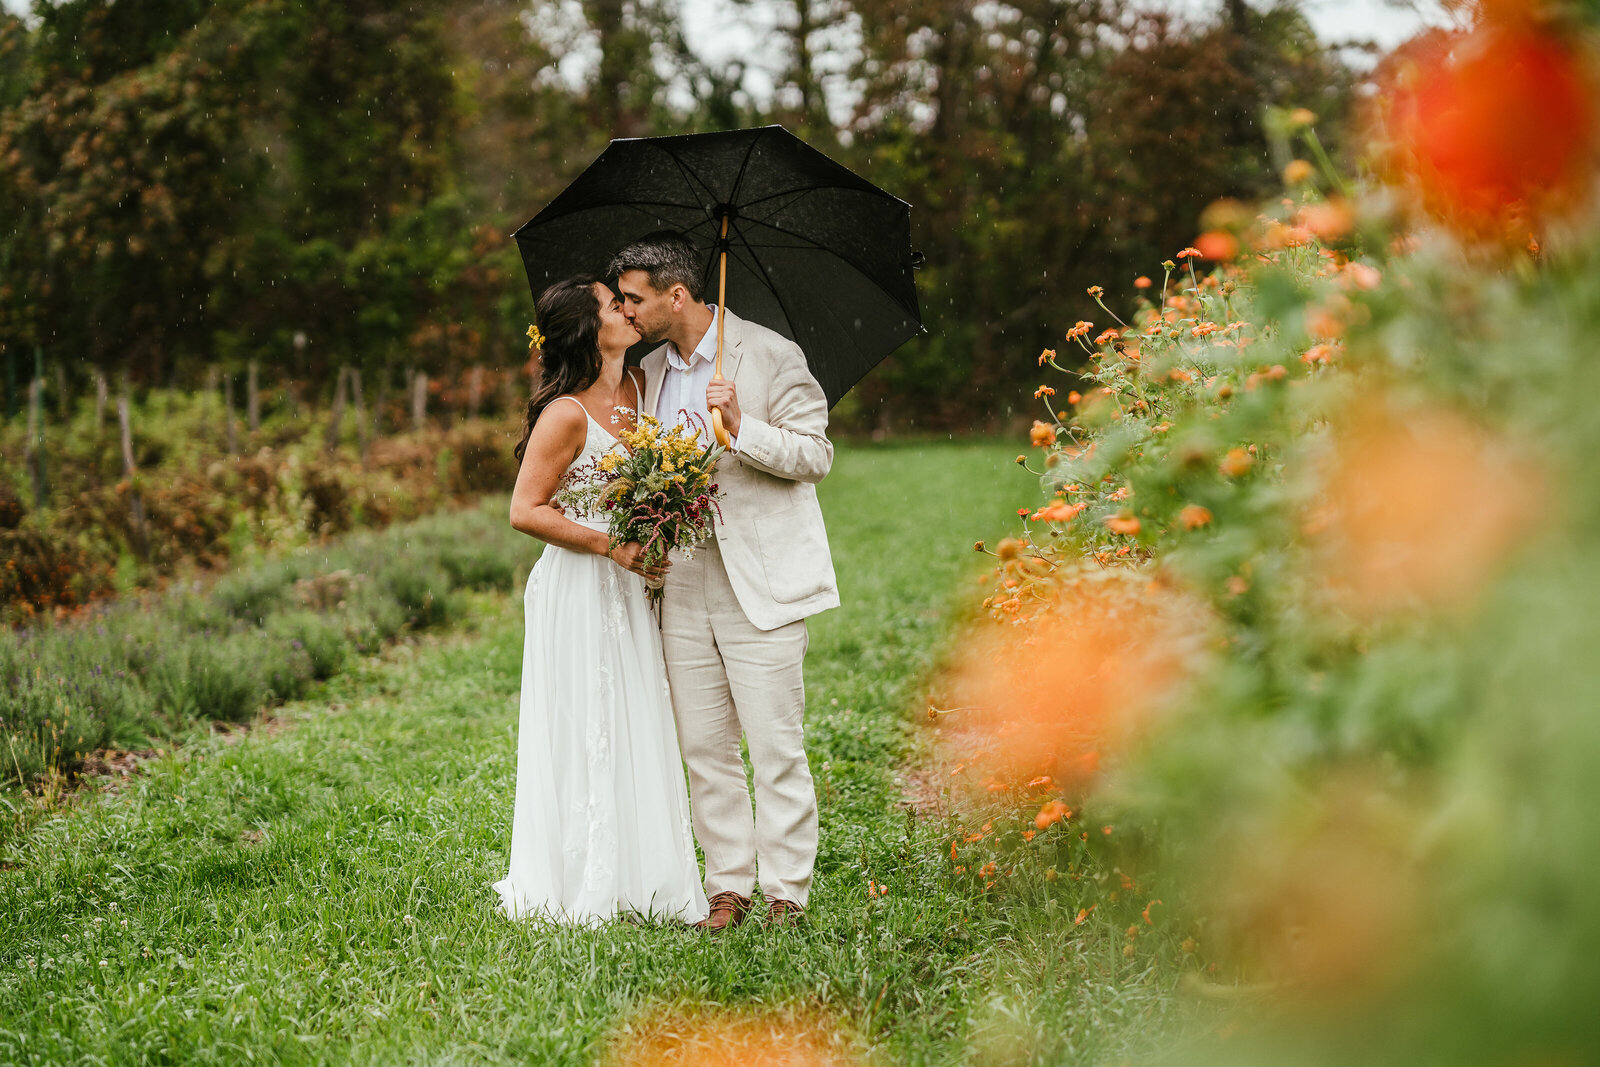 boston elopement in the rain with umbrella